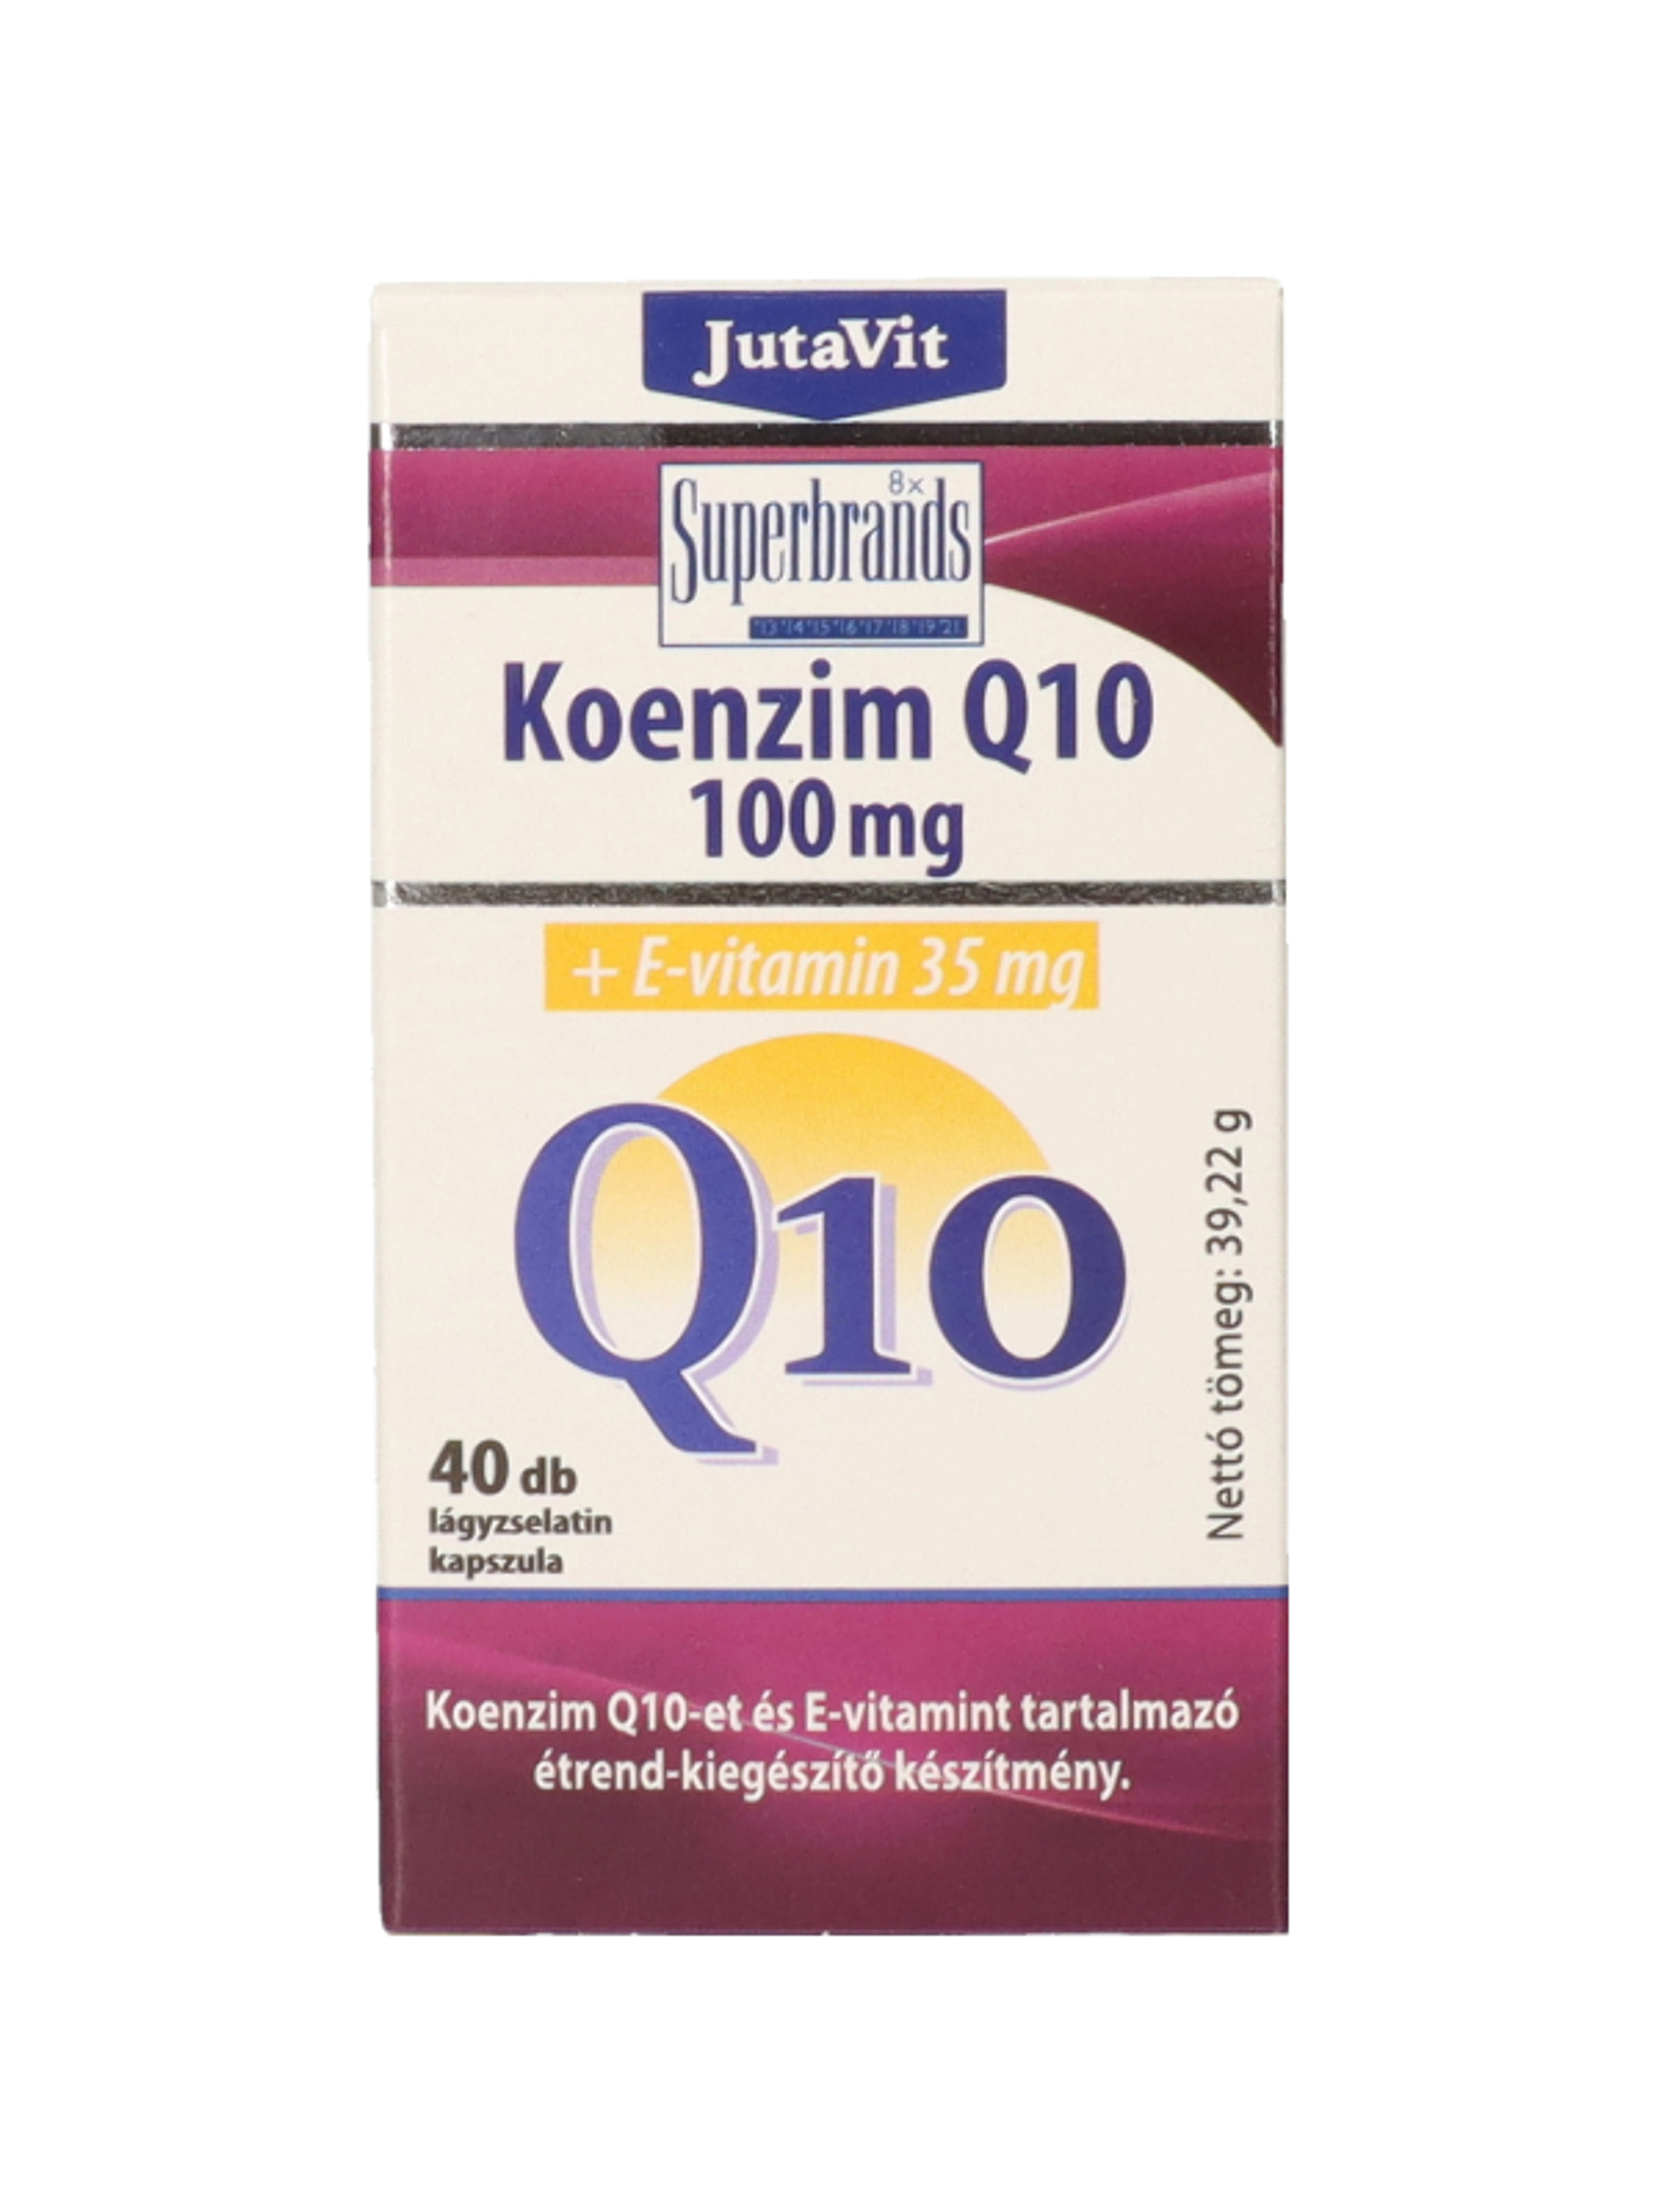 Jutavit koenzim Q10 100mg+E-vitamin 35 g - 40 db